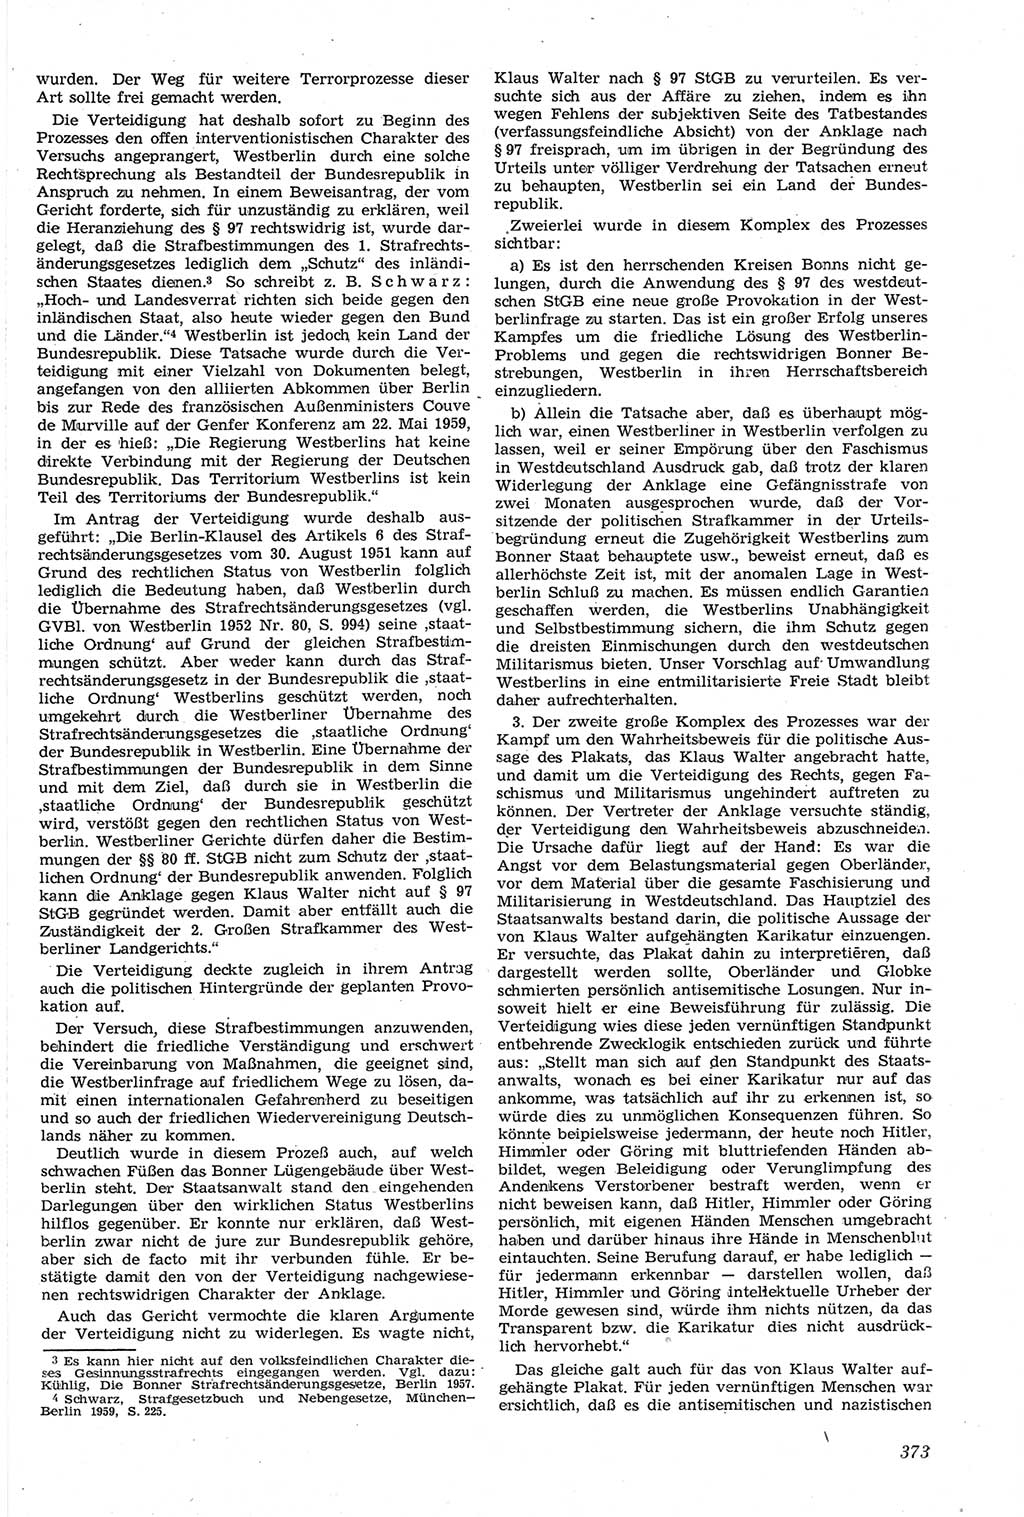 Neue Justiz (NJ), Zeitschrift für Recht und Rechtswissenschaft [Deutsche Demokratische Republik (DDR)], 14. Jahrgang 1960, Seite 373 (NJ DDR 1960, S. 373)